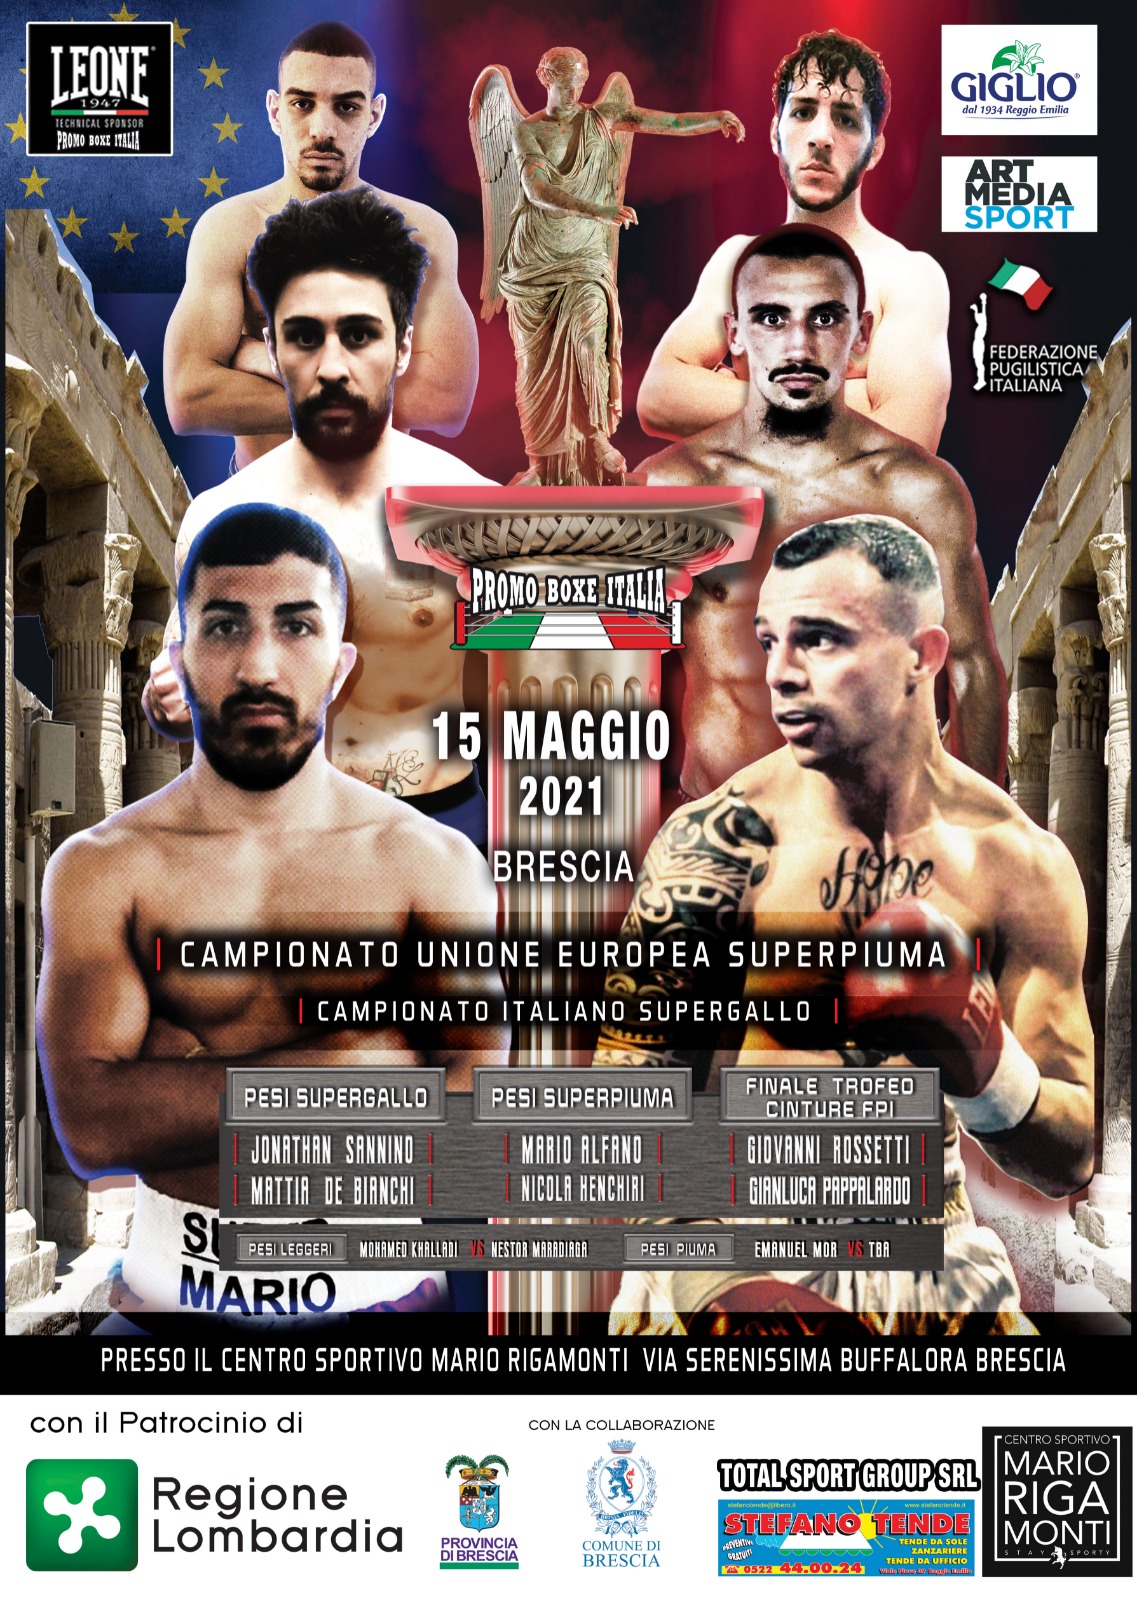 Brescia Boxing Night 15 Maggio 2021 - A sfidare Alfano  per UE Superpiuma sarà Henchiri 